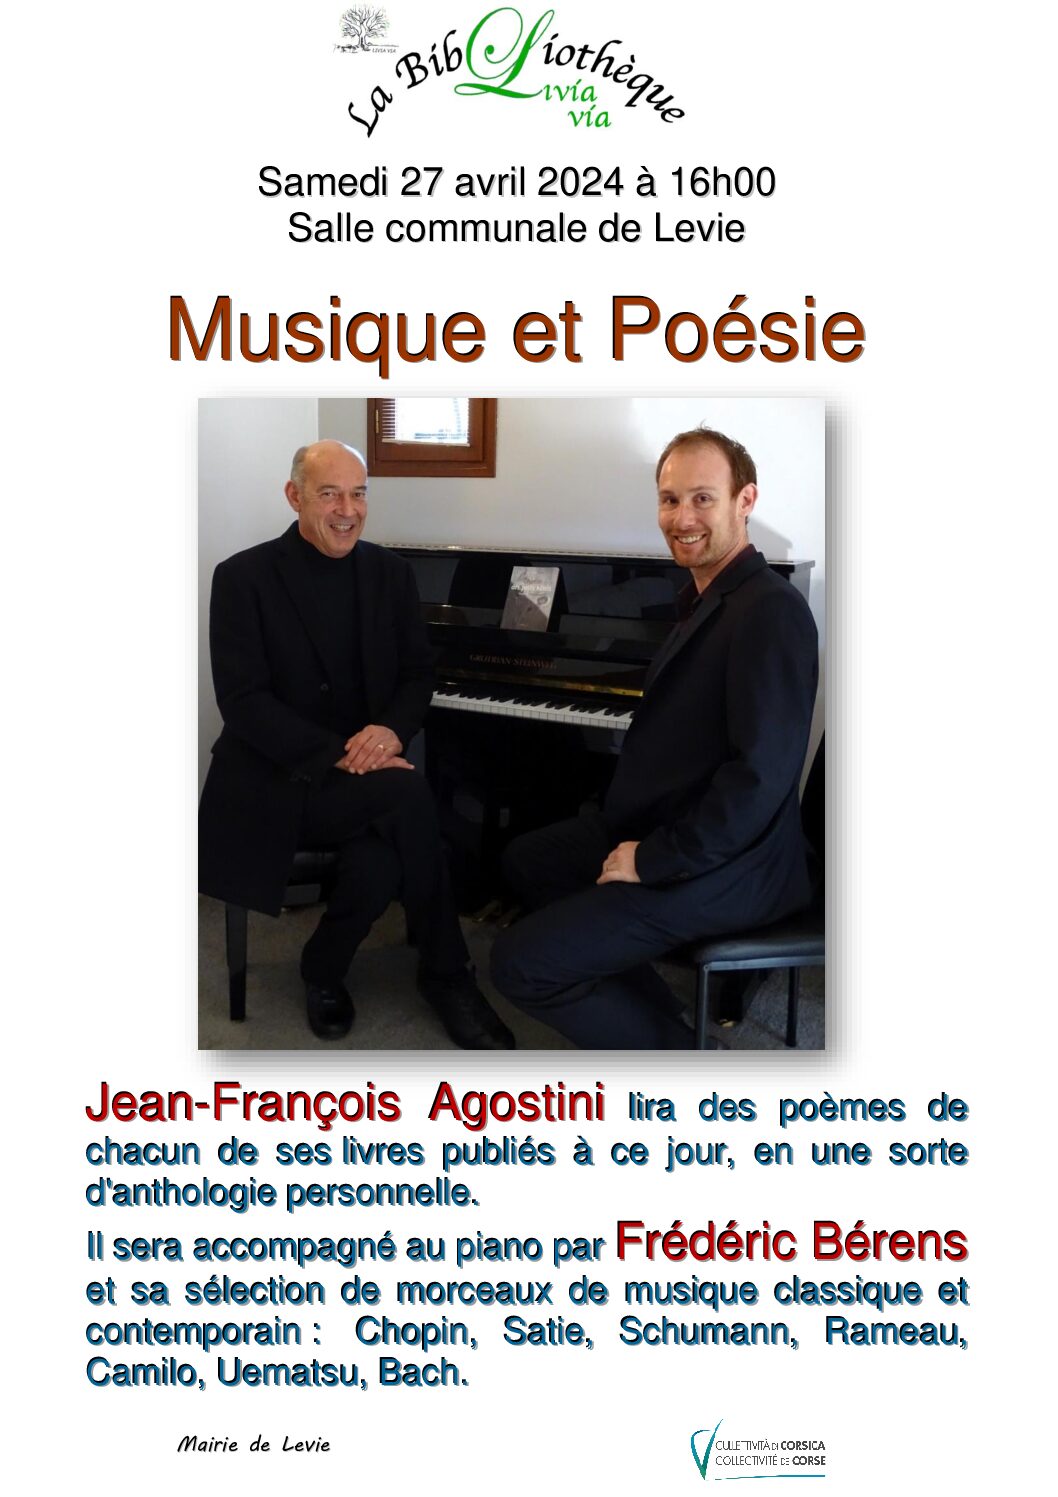 Livia Via : Journée de la poésie et concert classique avec Jean François Agostini et Fréderic Berens